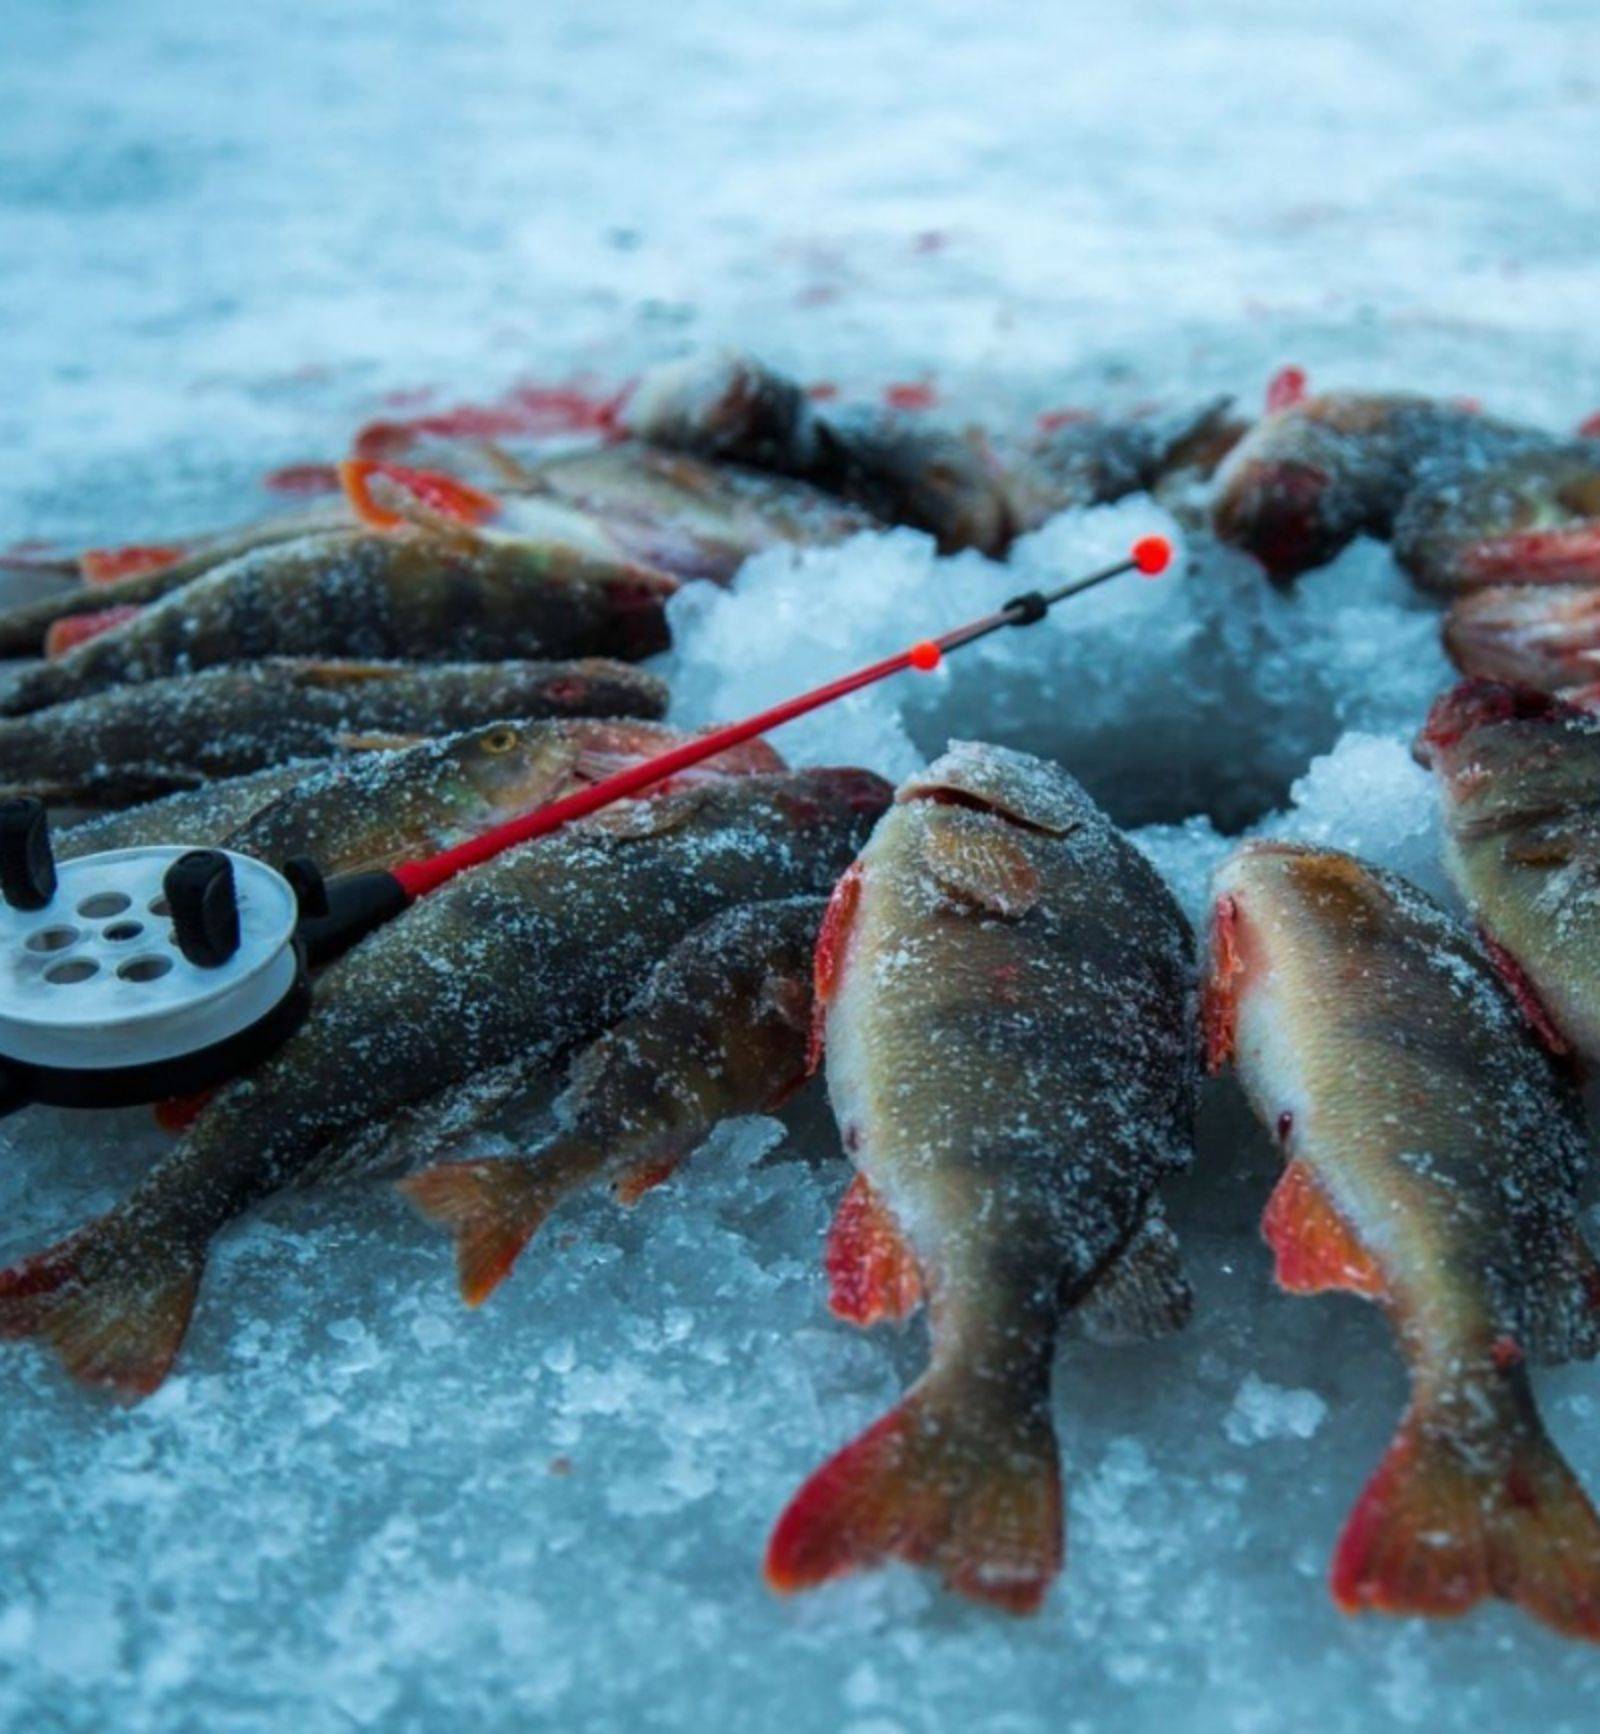 Блог сергея балашова. джиг на малой реке: моя любимая оснастка. 5 февраля 2019 г. рыболовный блог